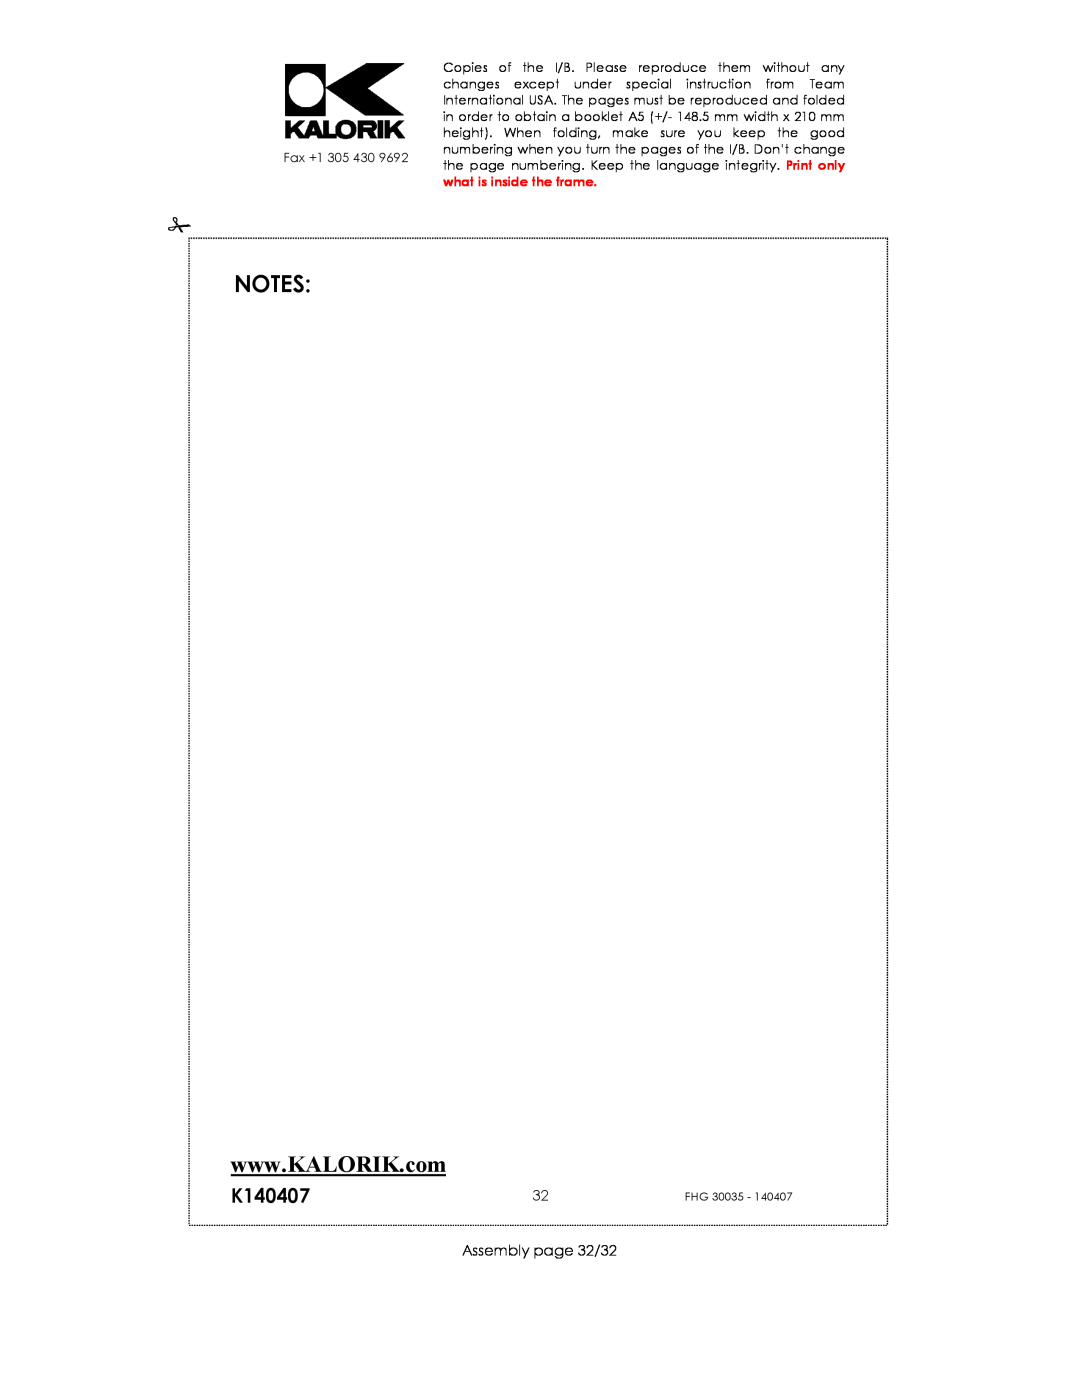 Kalorik FHG 30035 manual K140407, Assembly page 32/32 